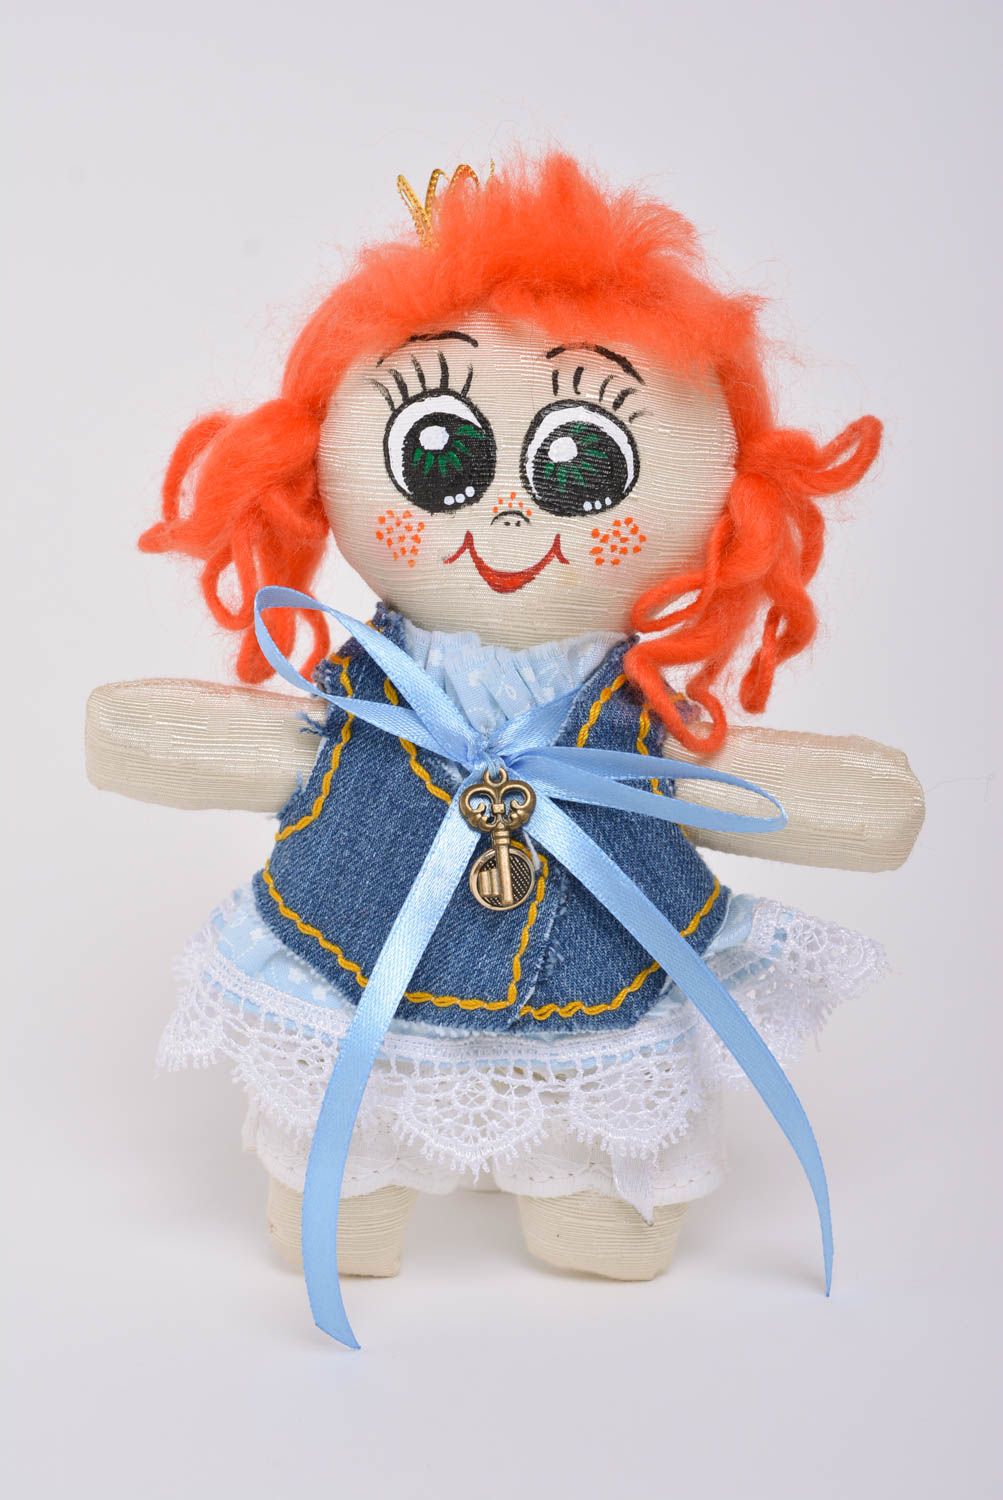 Мягкая игрушка принцесса из ткани ручной работы красивая для детей и дома фото 1